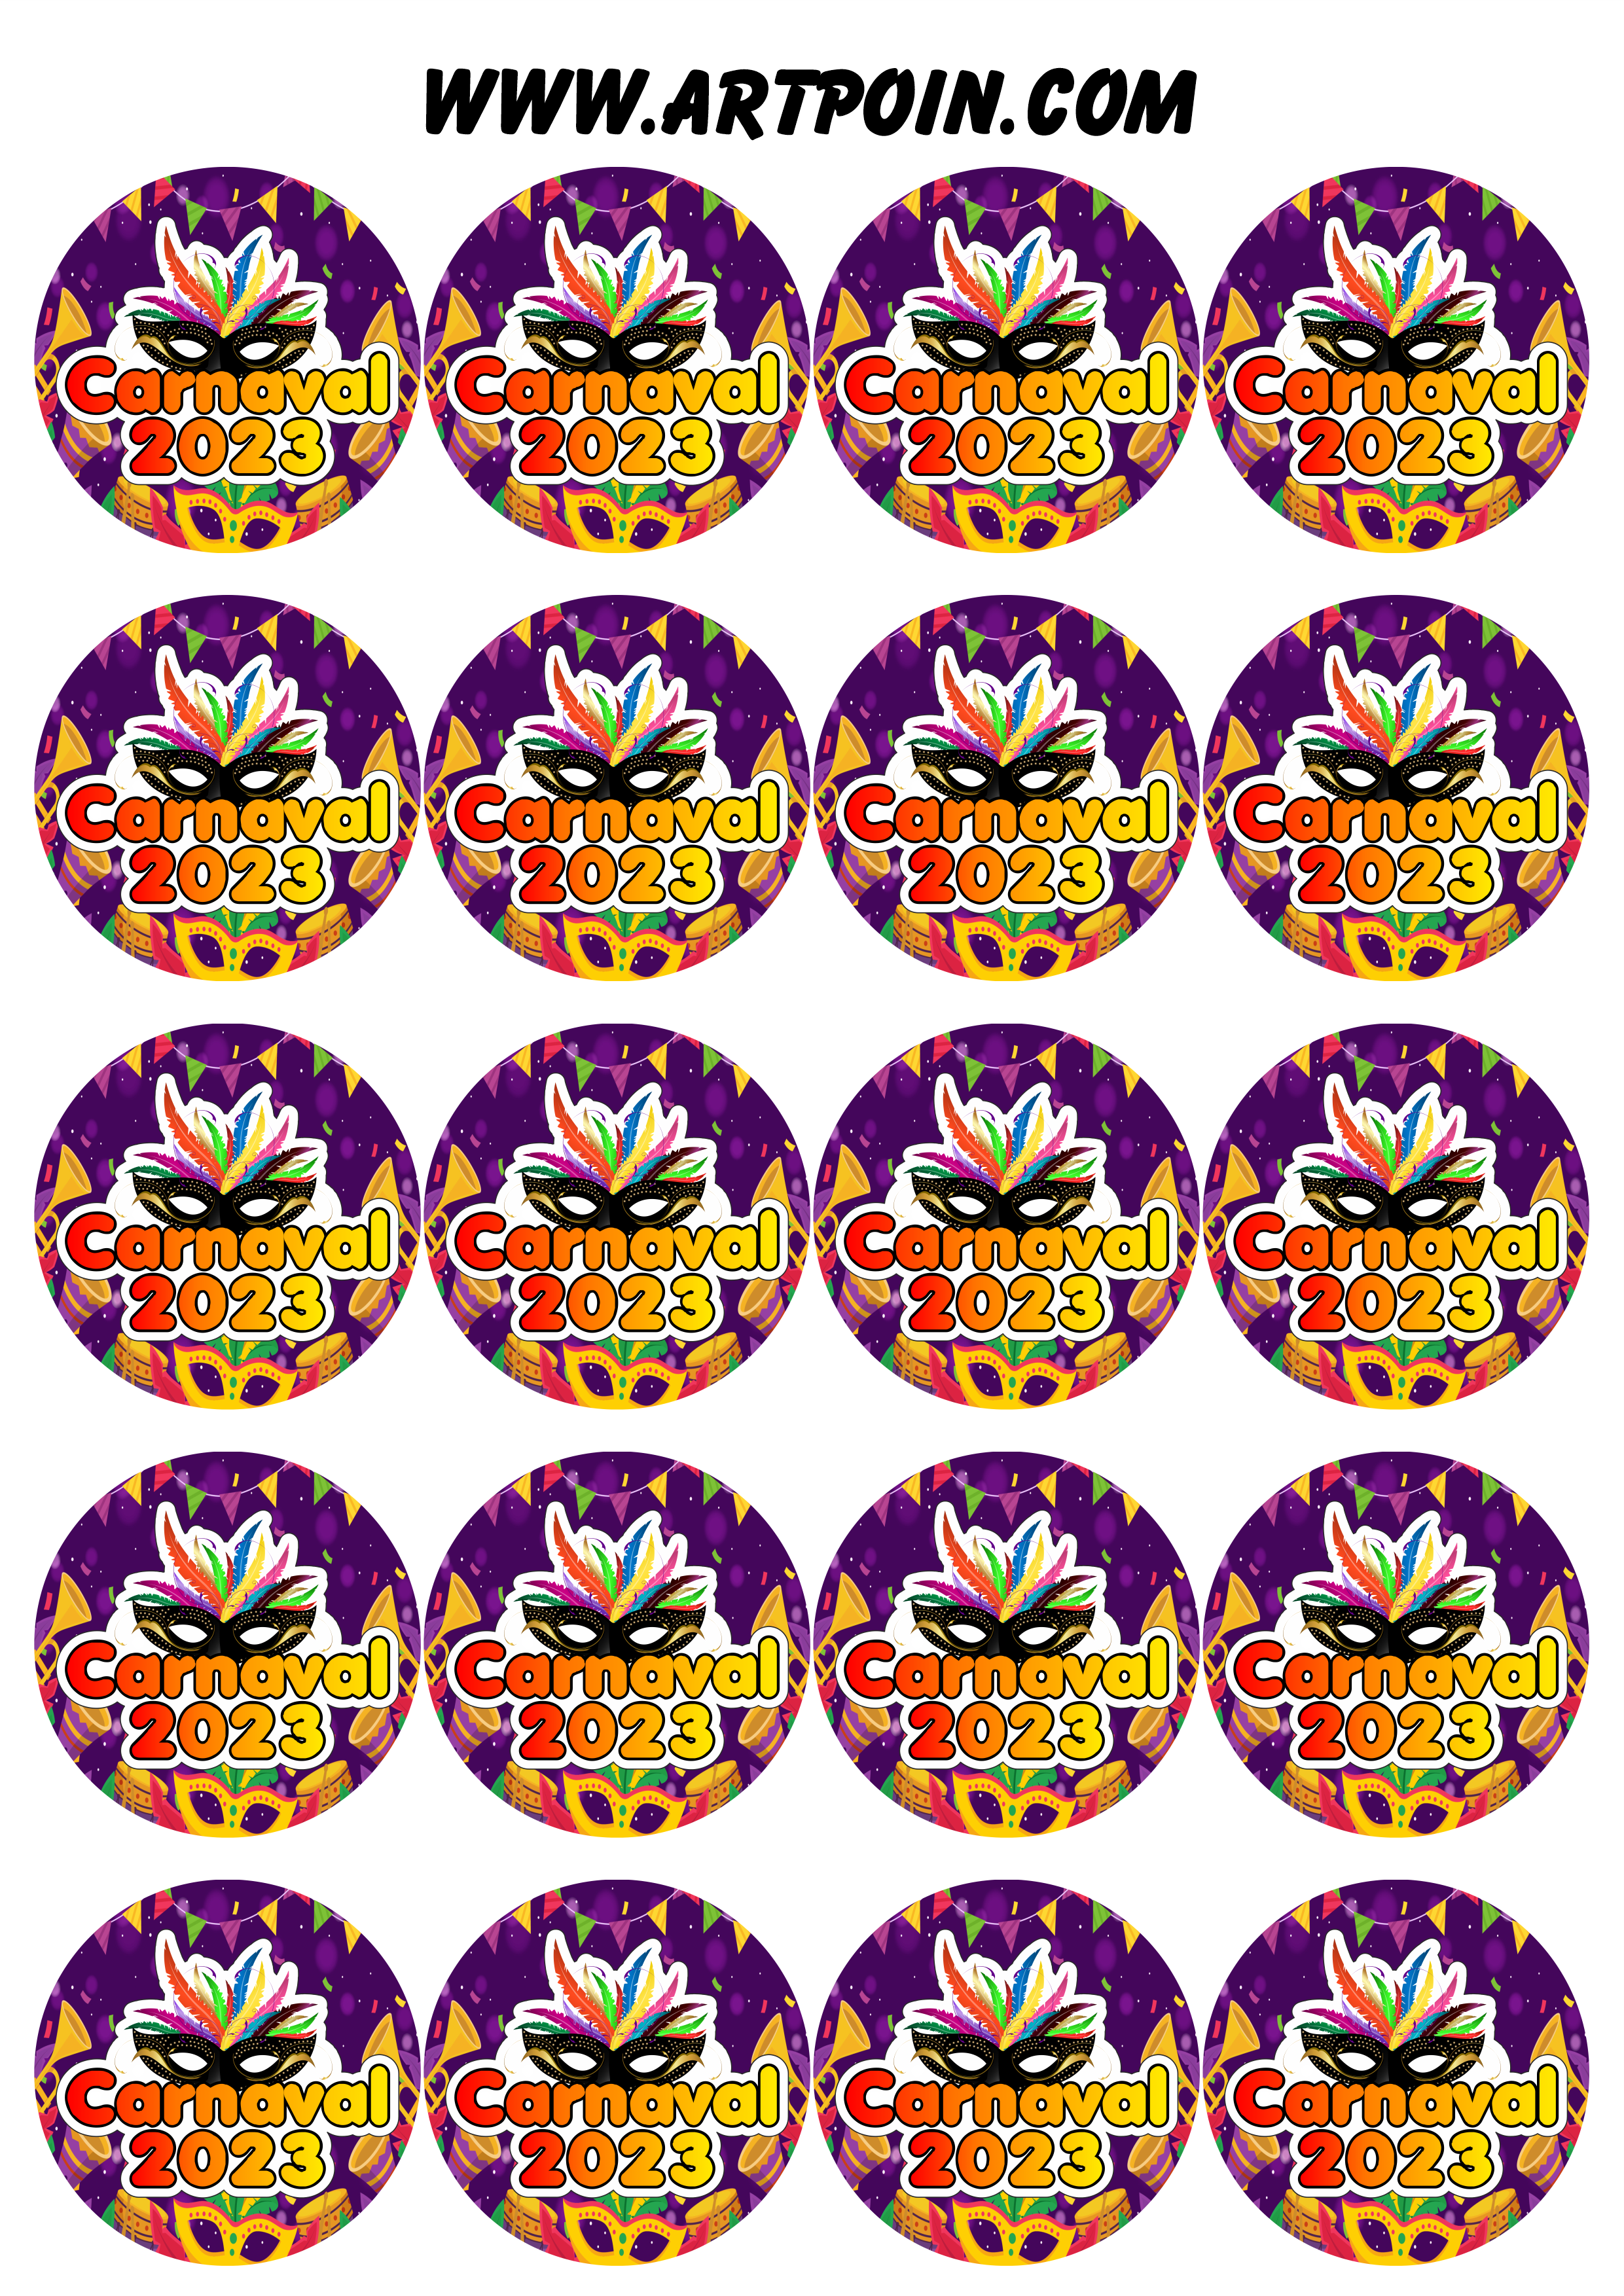 Carnaval 2023 adesivos stickers redondos pronto para imprimir e decorar 20 imagens png